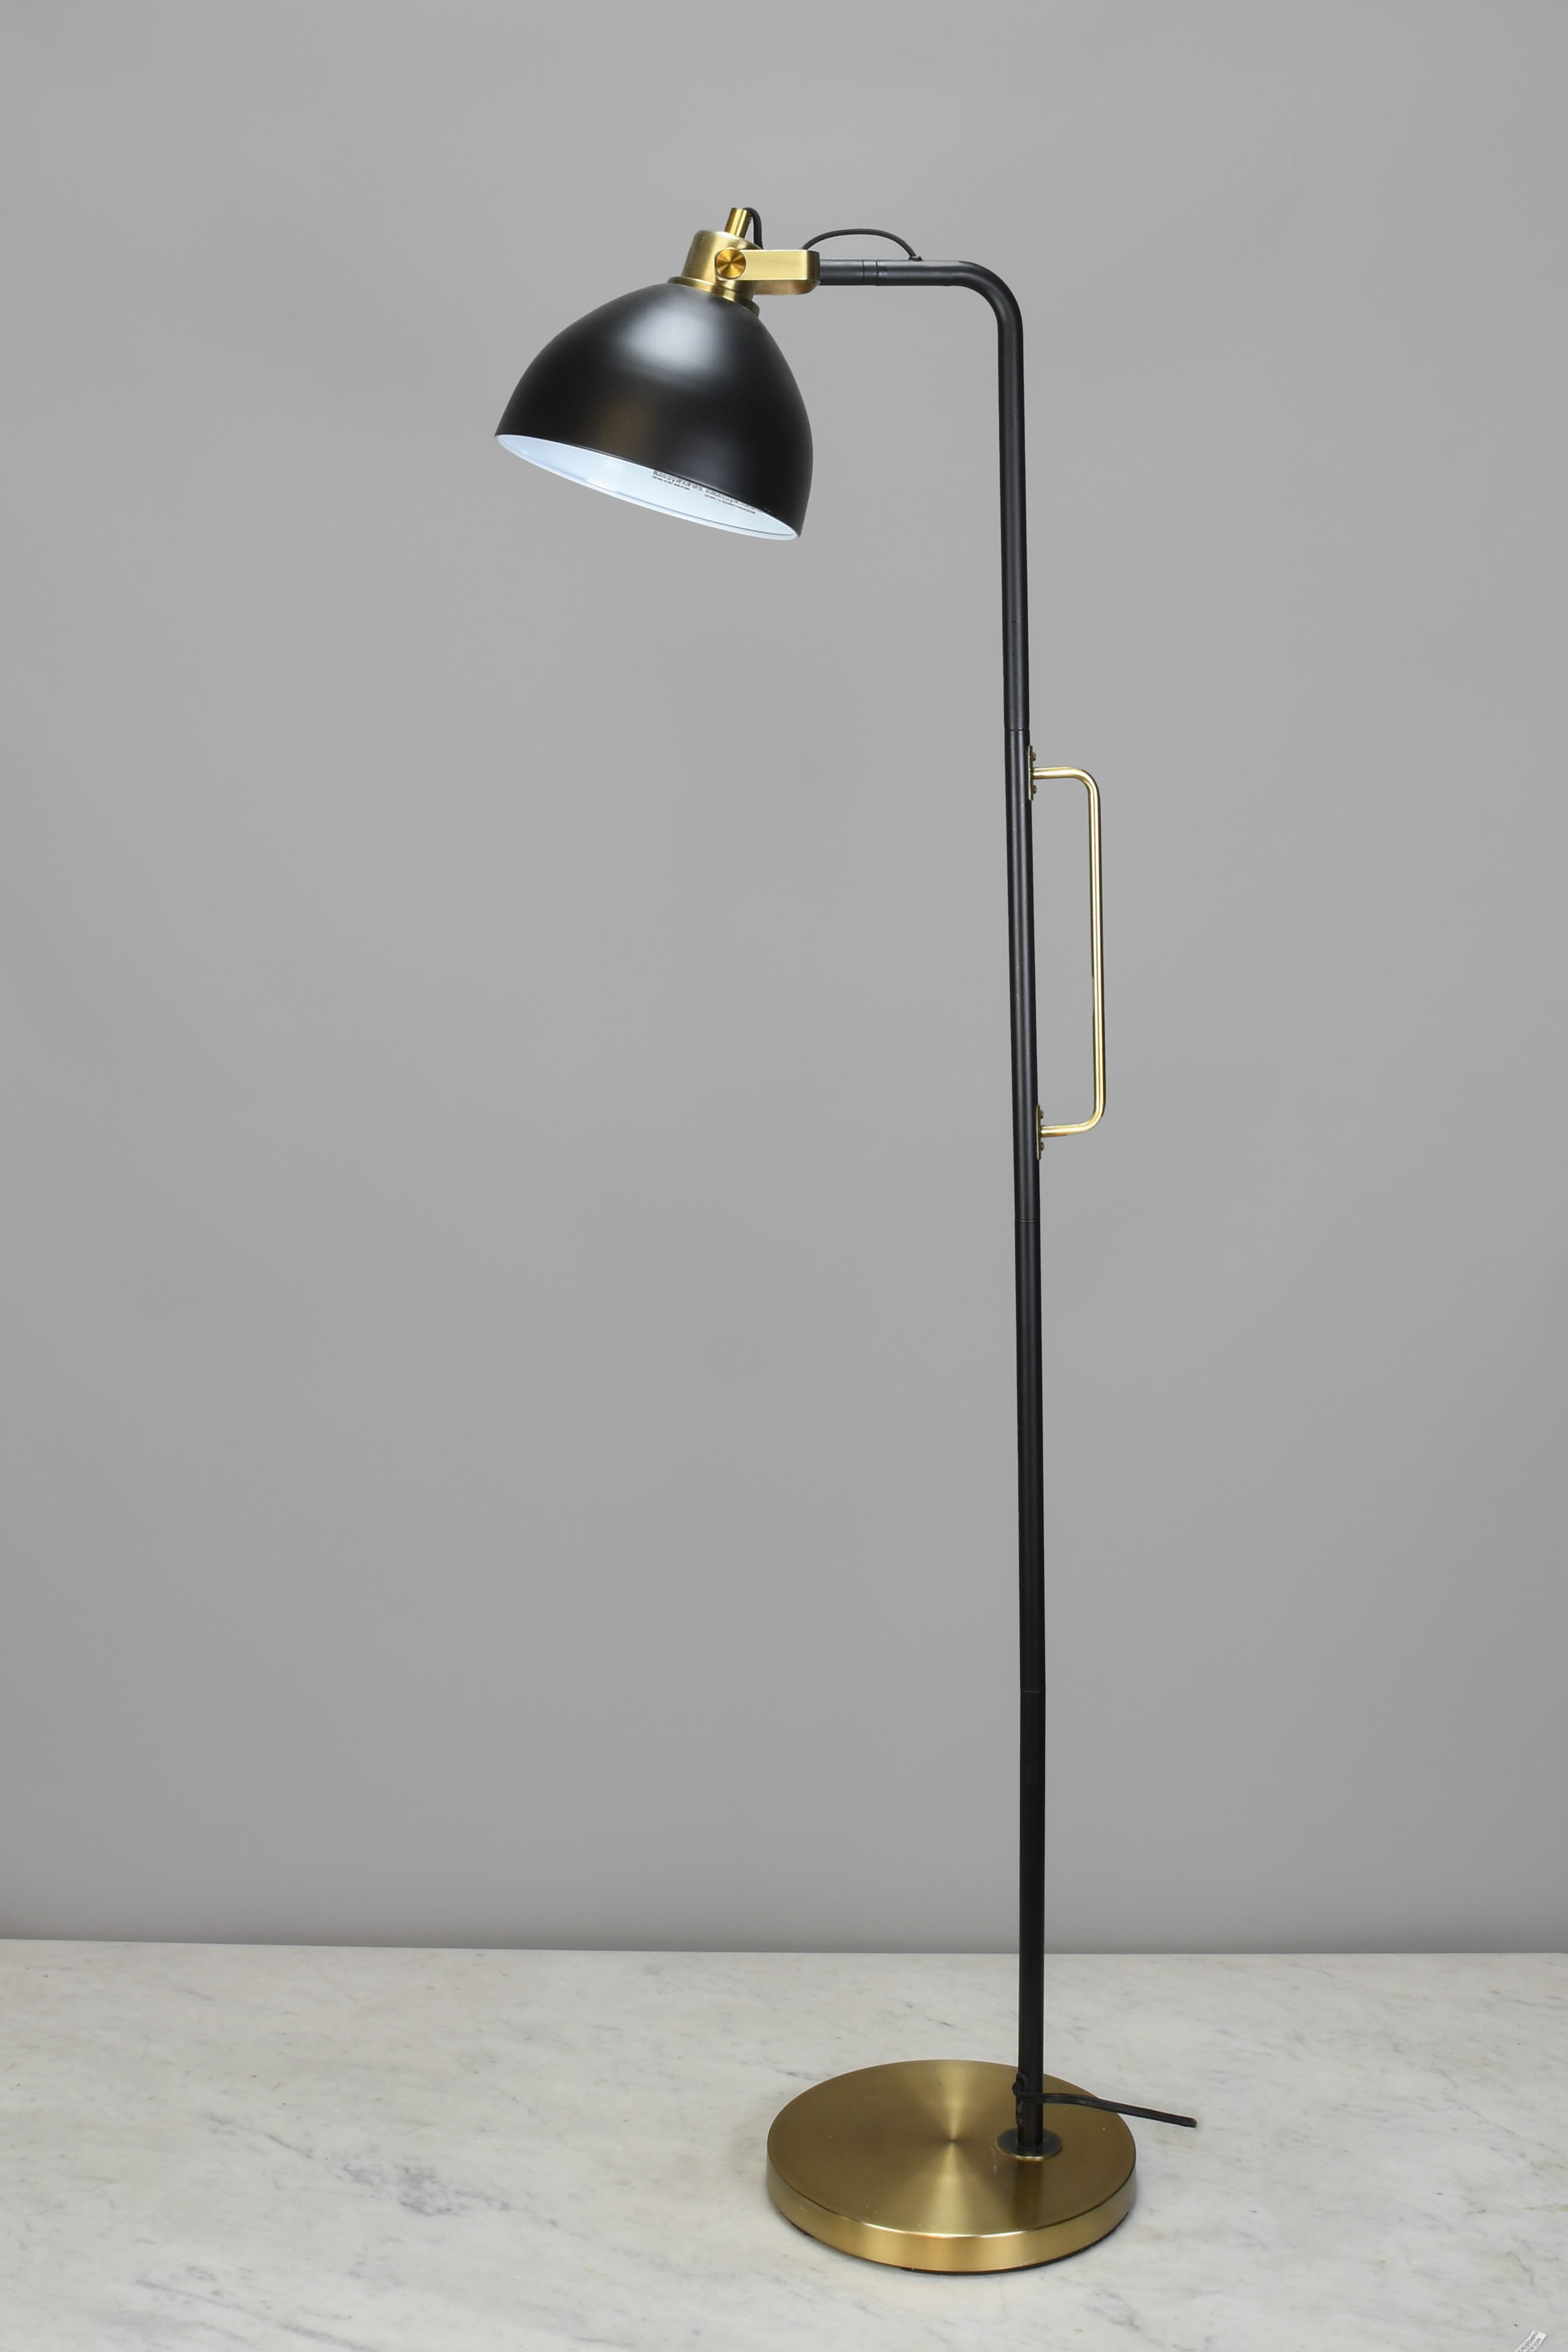 Adjustable Brass Reading Floor Lamp, Floor Lamps, Collection, City  Knickerbocker